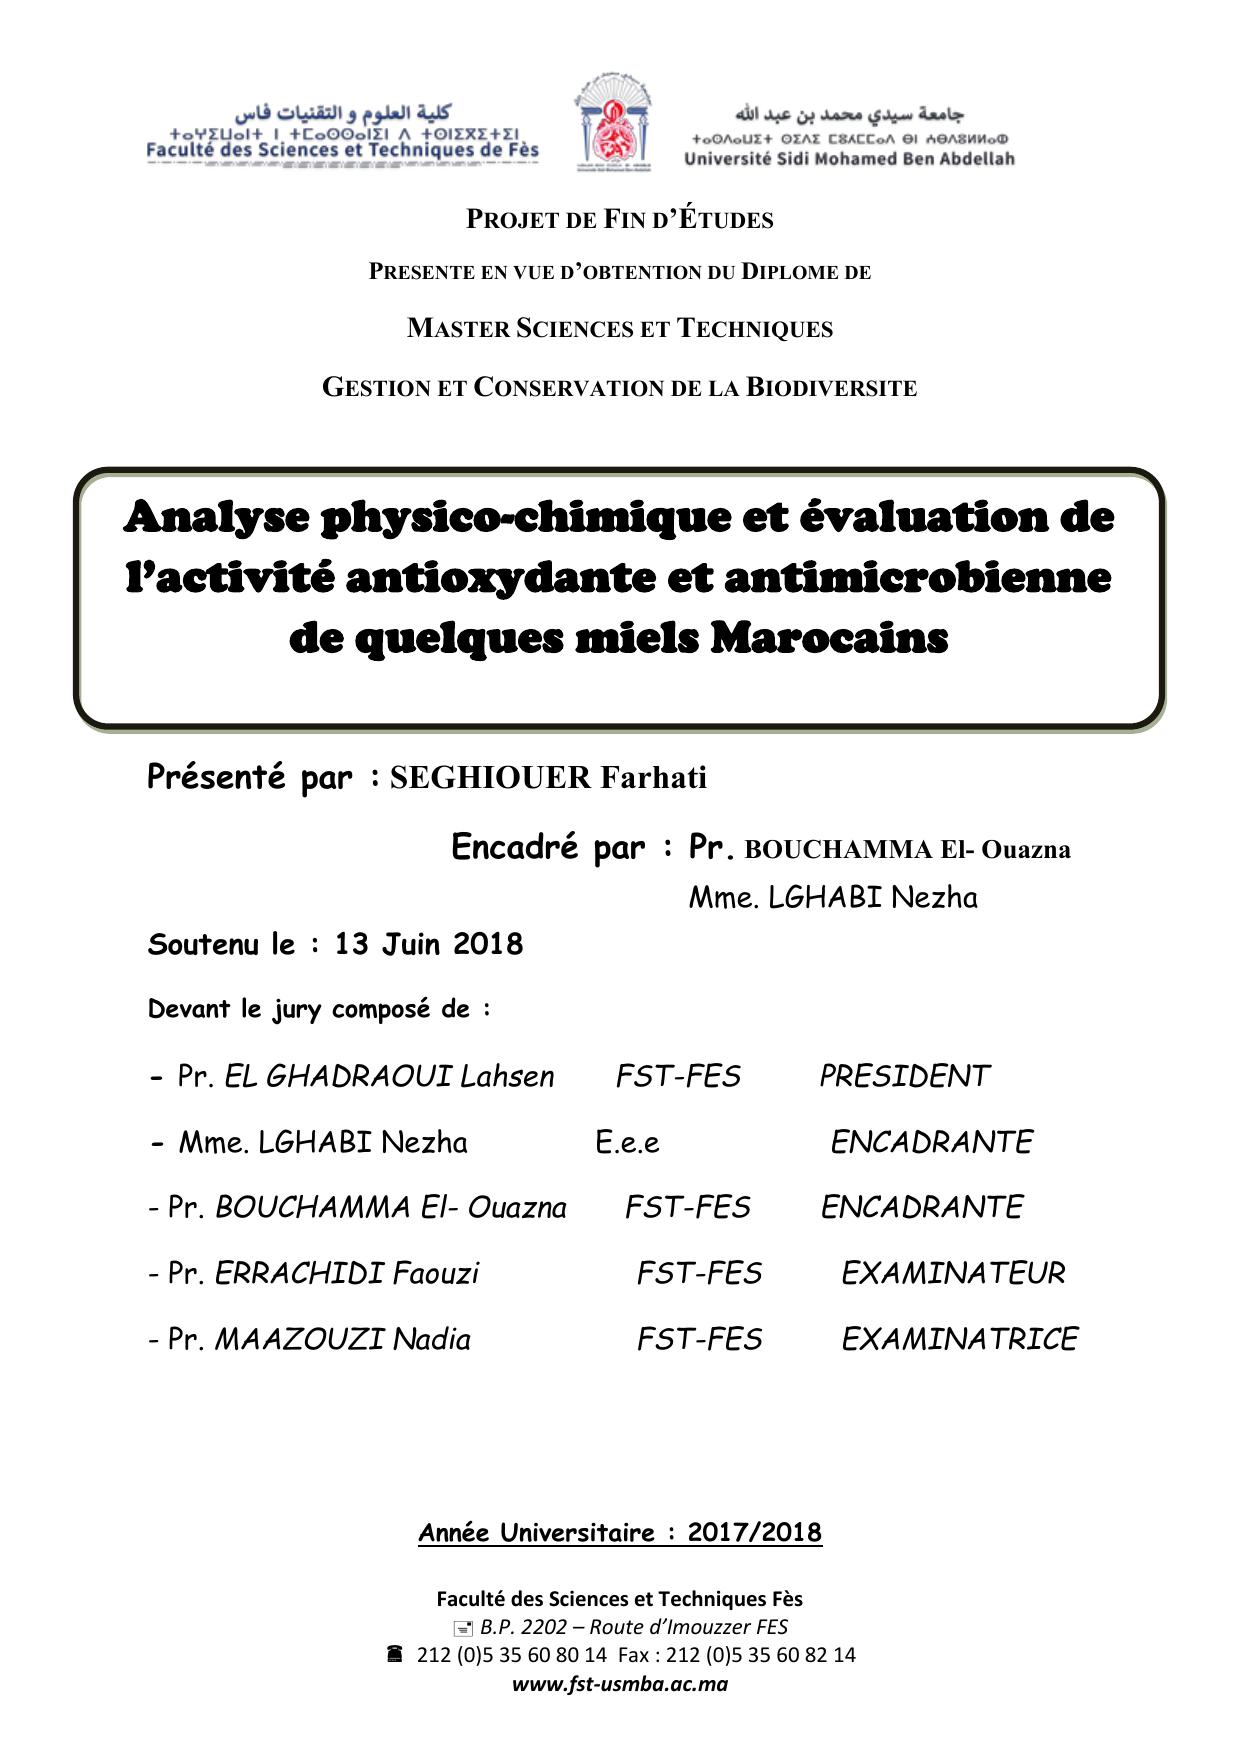 Analyse physico-chimique et évaluation de l’activité antioxydante et antimicrobienne de quelques miels Marocains